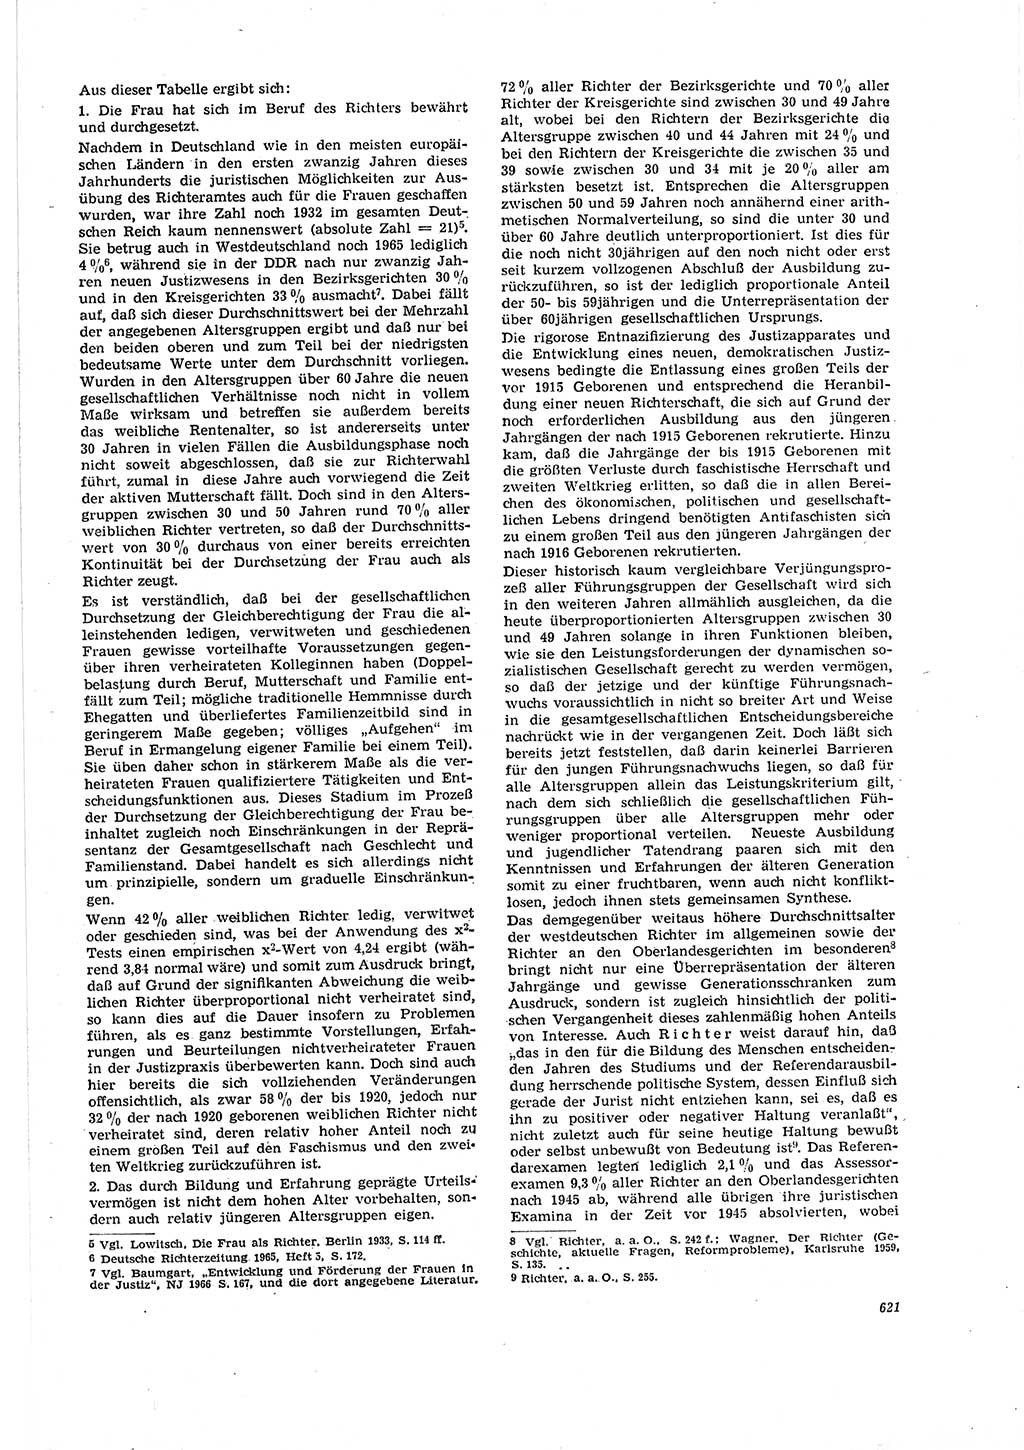 Neue Justiz (NJ), Zeitschrift für Recht und Rechtswissenschaft [Deutsche Demokratische Republik (DDR)], 20. Jahrgang 1966, Seite 621 (NJ DDR 1966, S. 621)